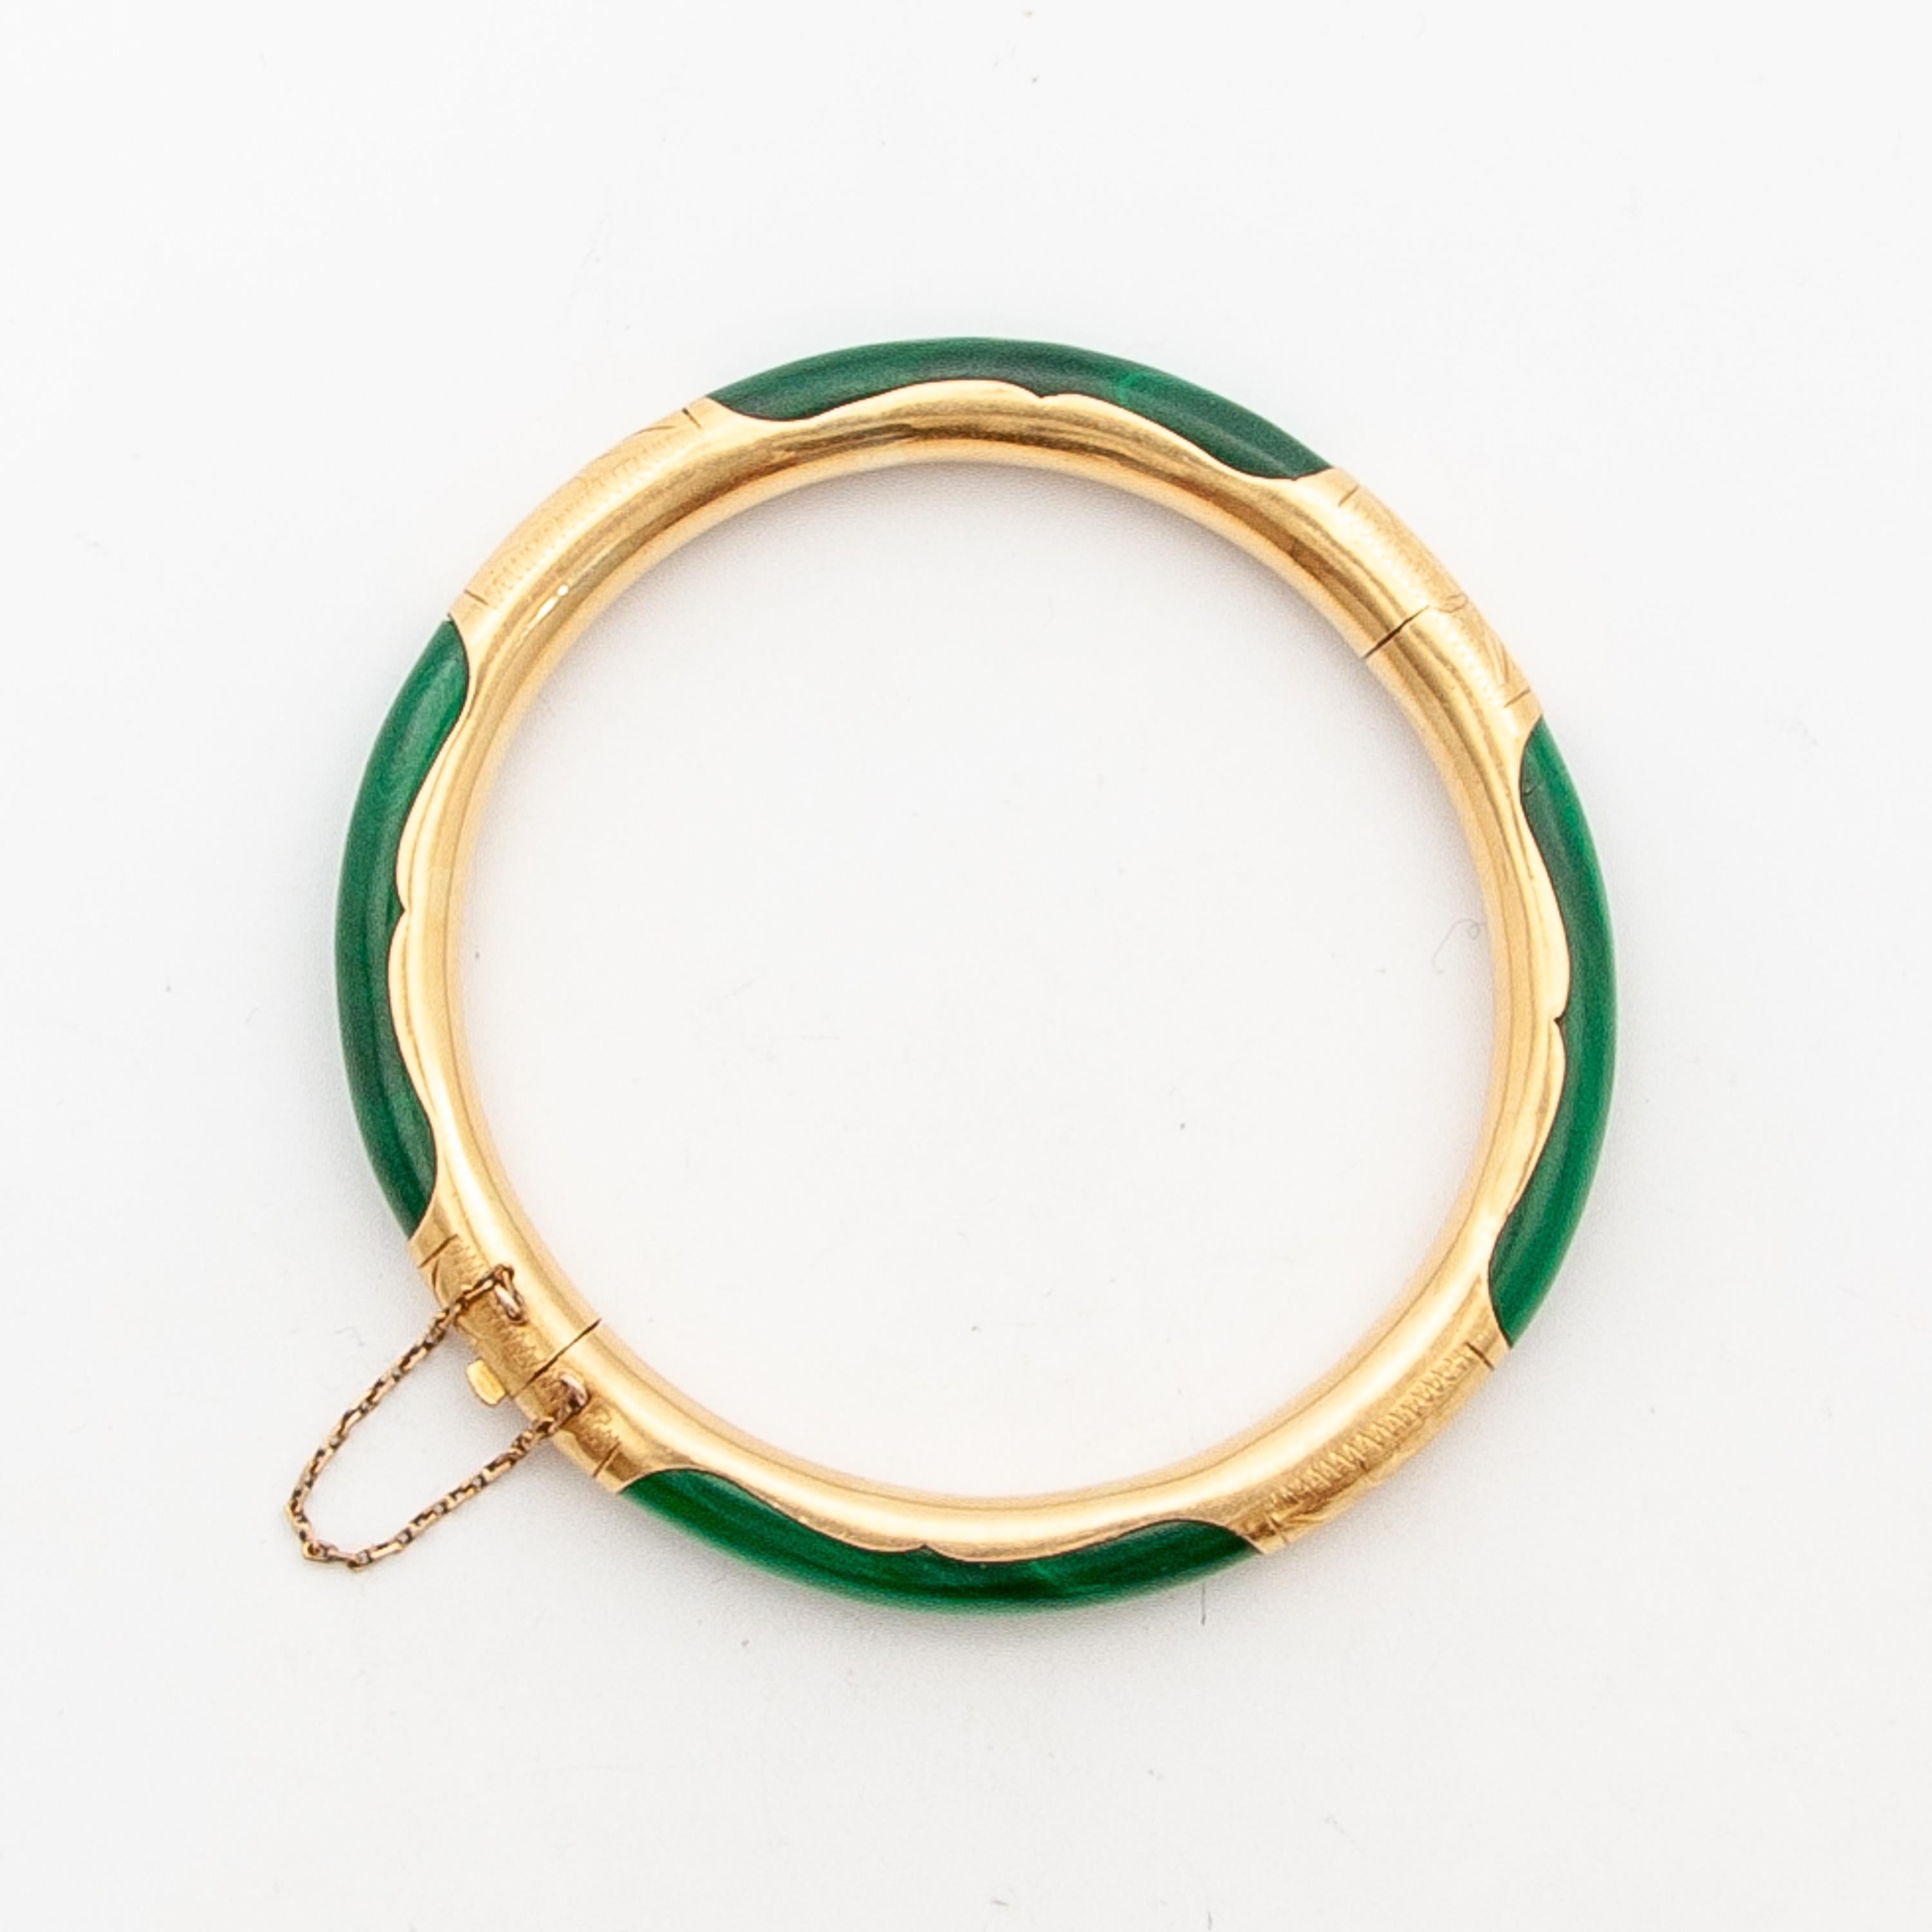 Bracelet bangle à charnière en malachite gravé en or 18 carats. Ce charmant bracelet présente une pierre polie ronde et lisse aux tons verts mélangés. Les compartiments de feuillage gravés en or 18 carats accentuent les sections en malachite. Le